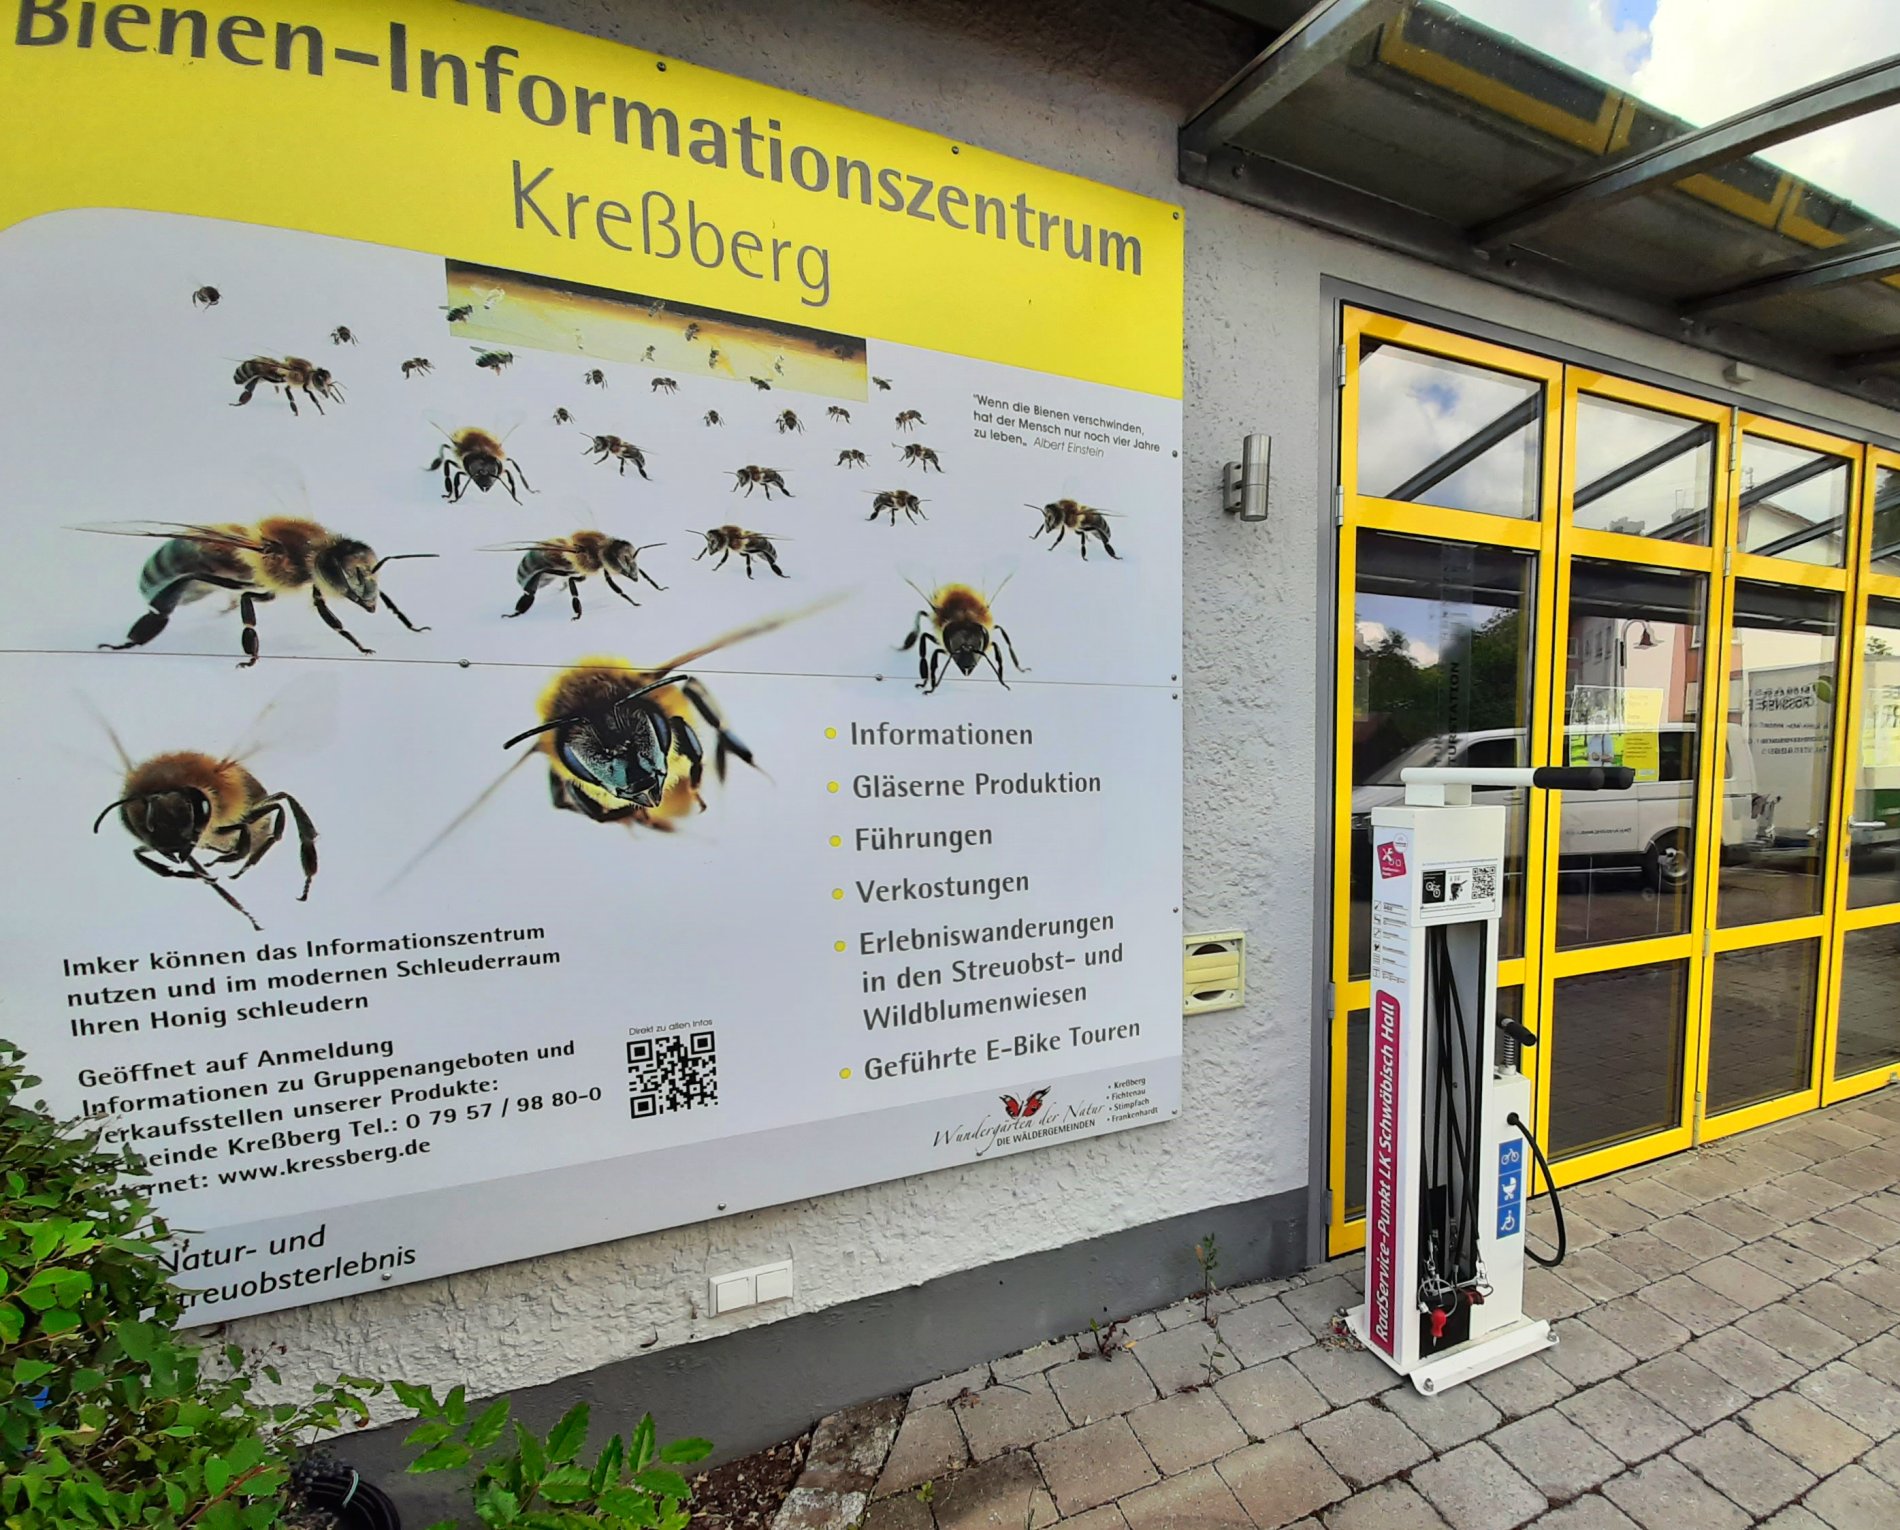 RadSERVICE-Punkt Leukershausen am Bieneninformationszentrum